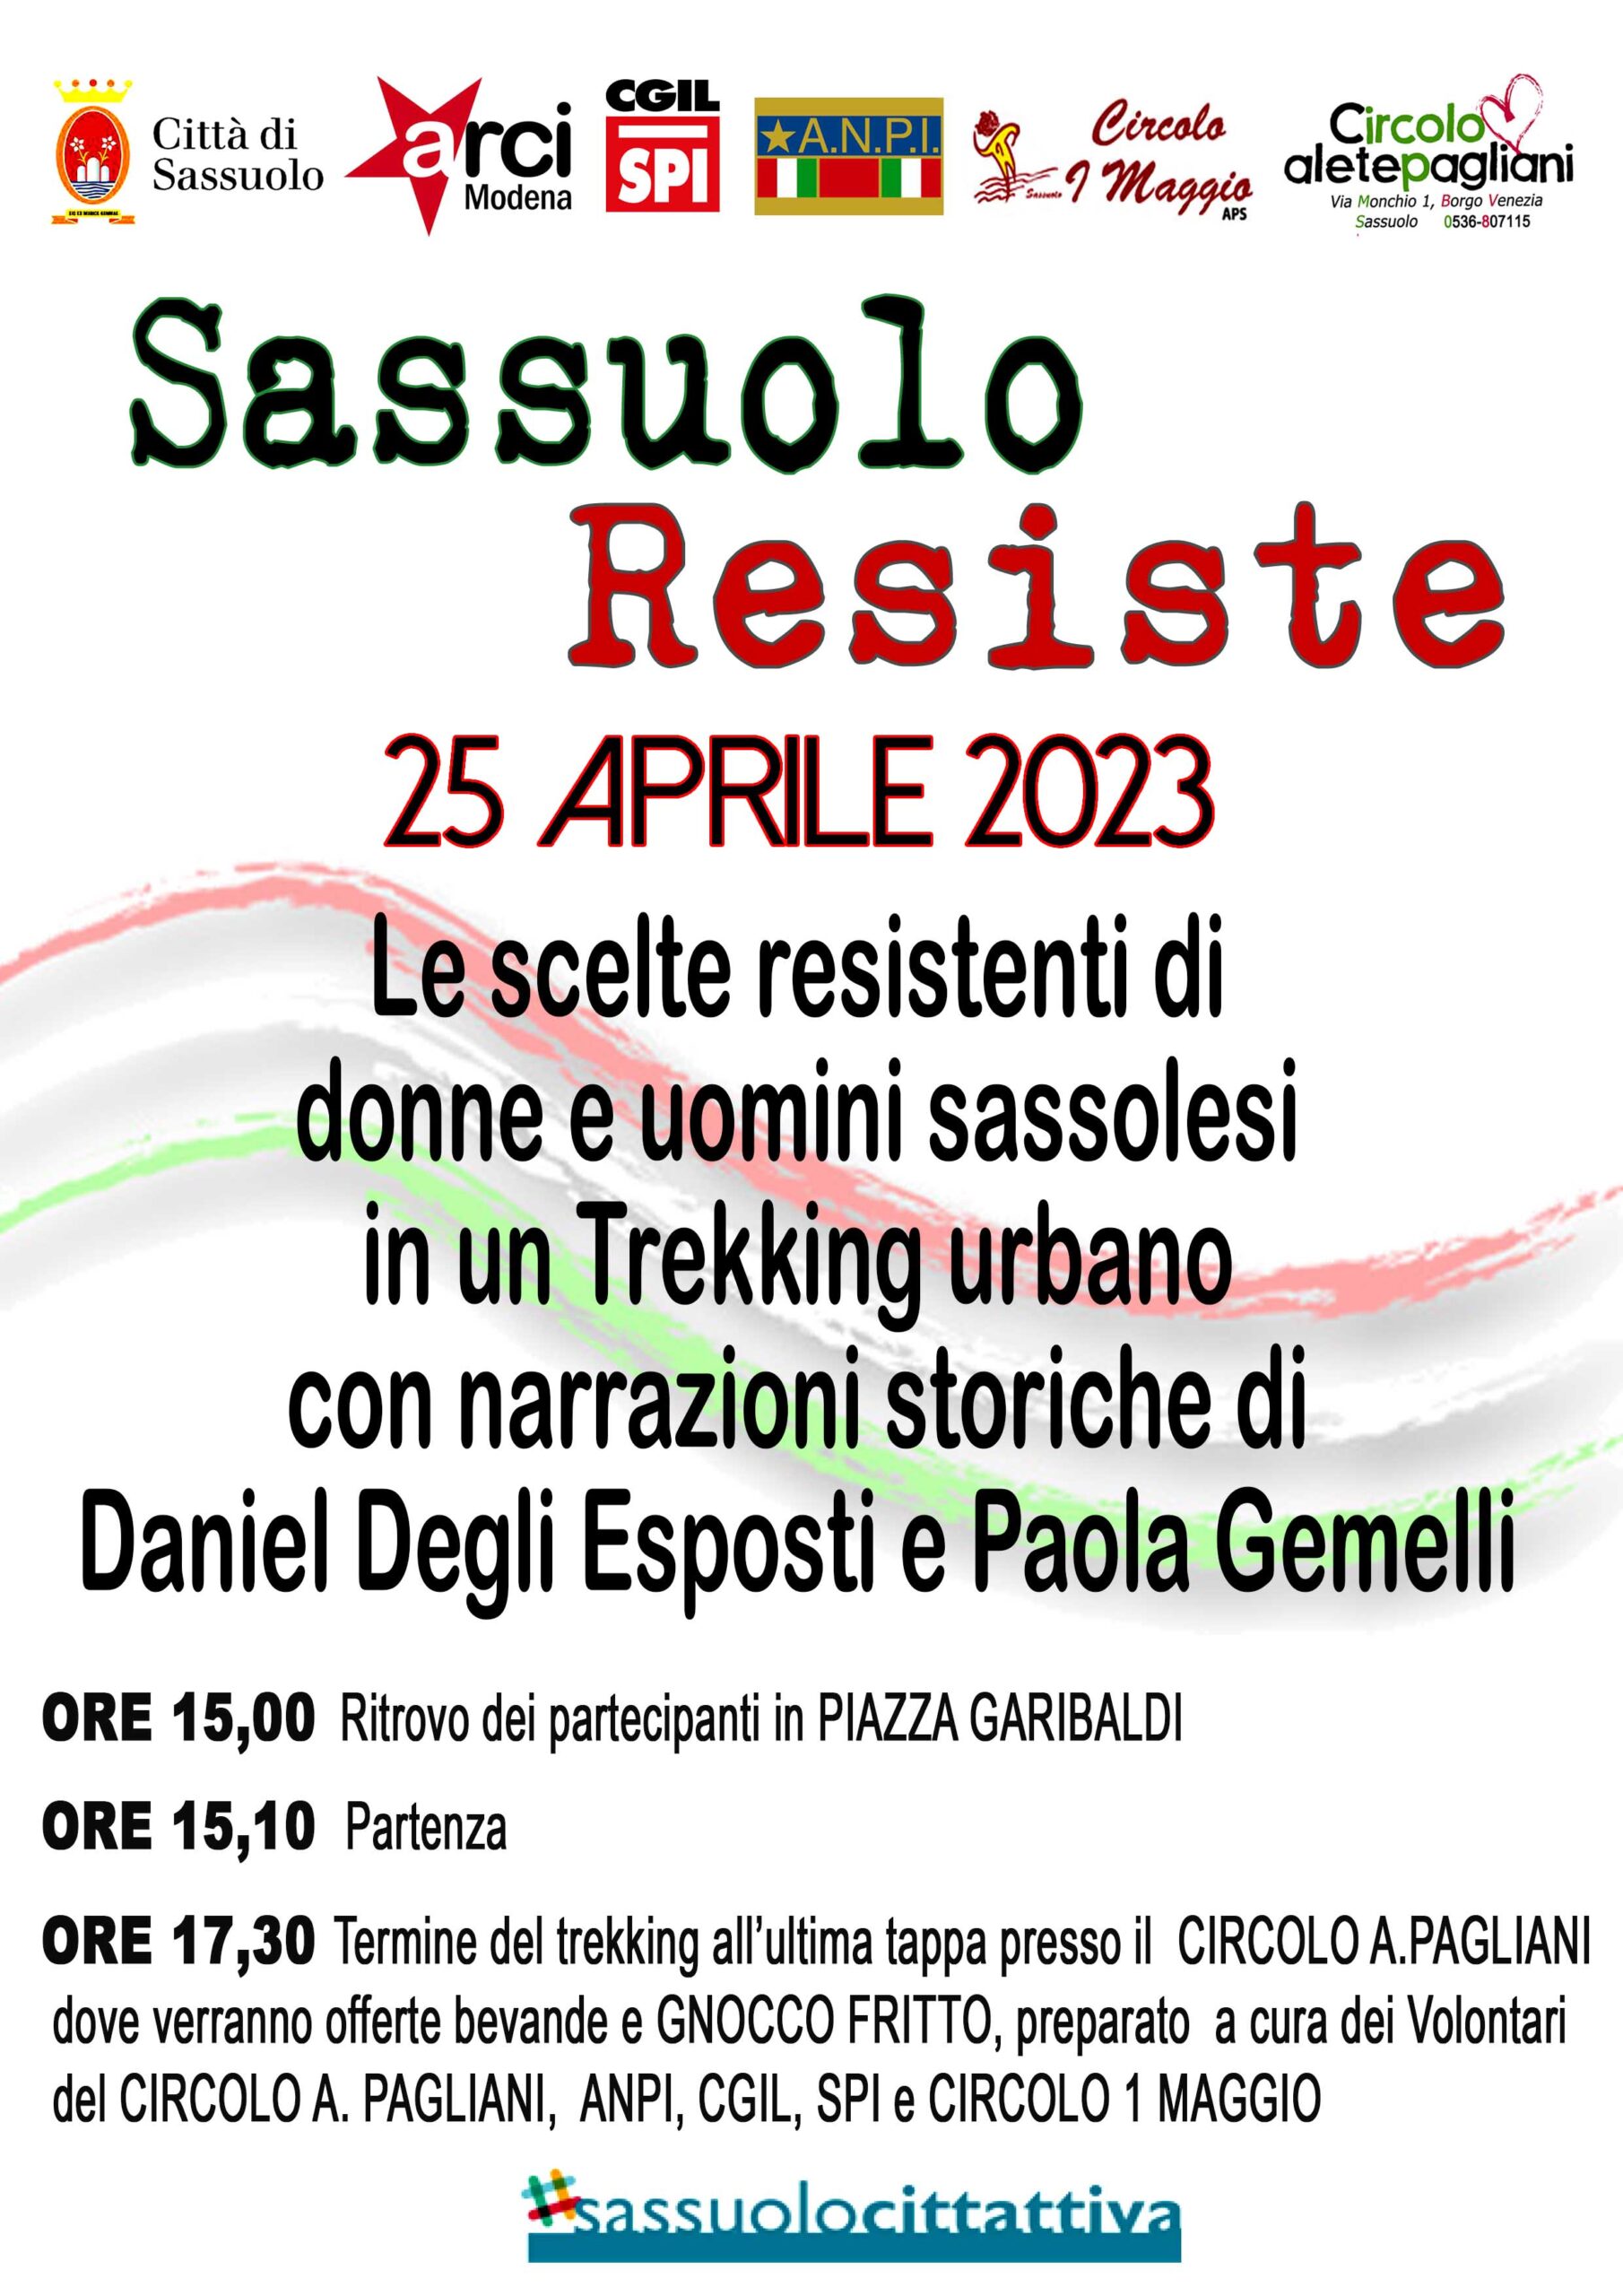 Resistenza a Sassuolo: locandina per il 25 aprile 2023 a Sassuolo (Modena)